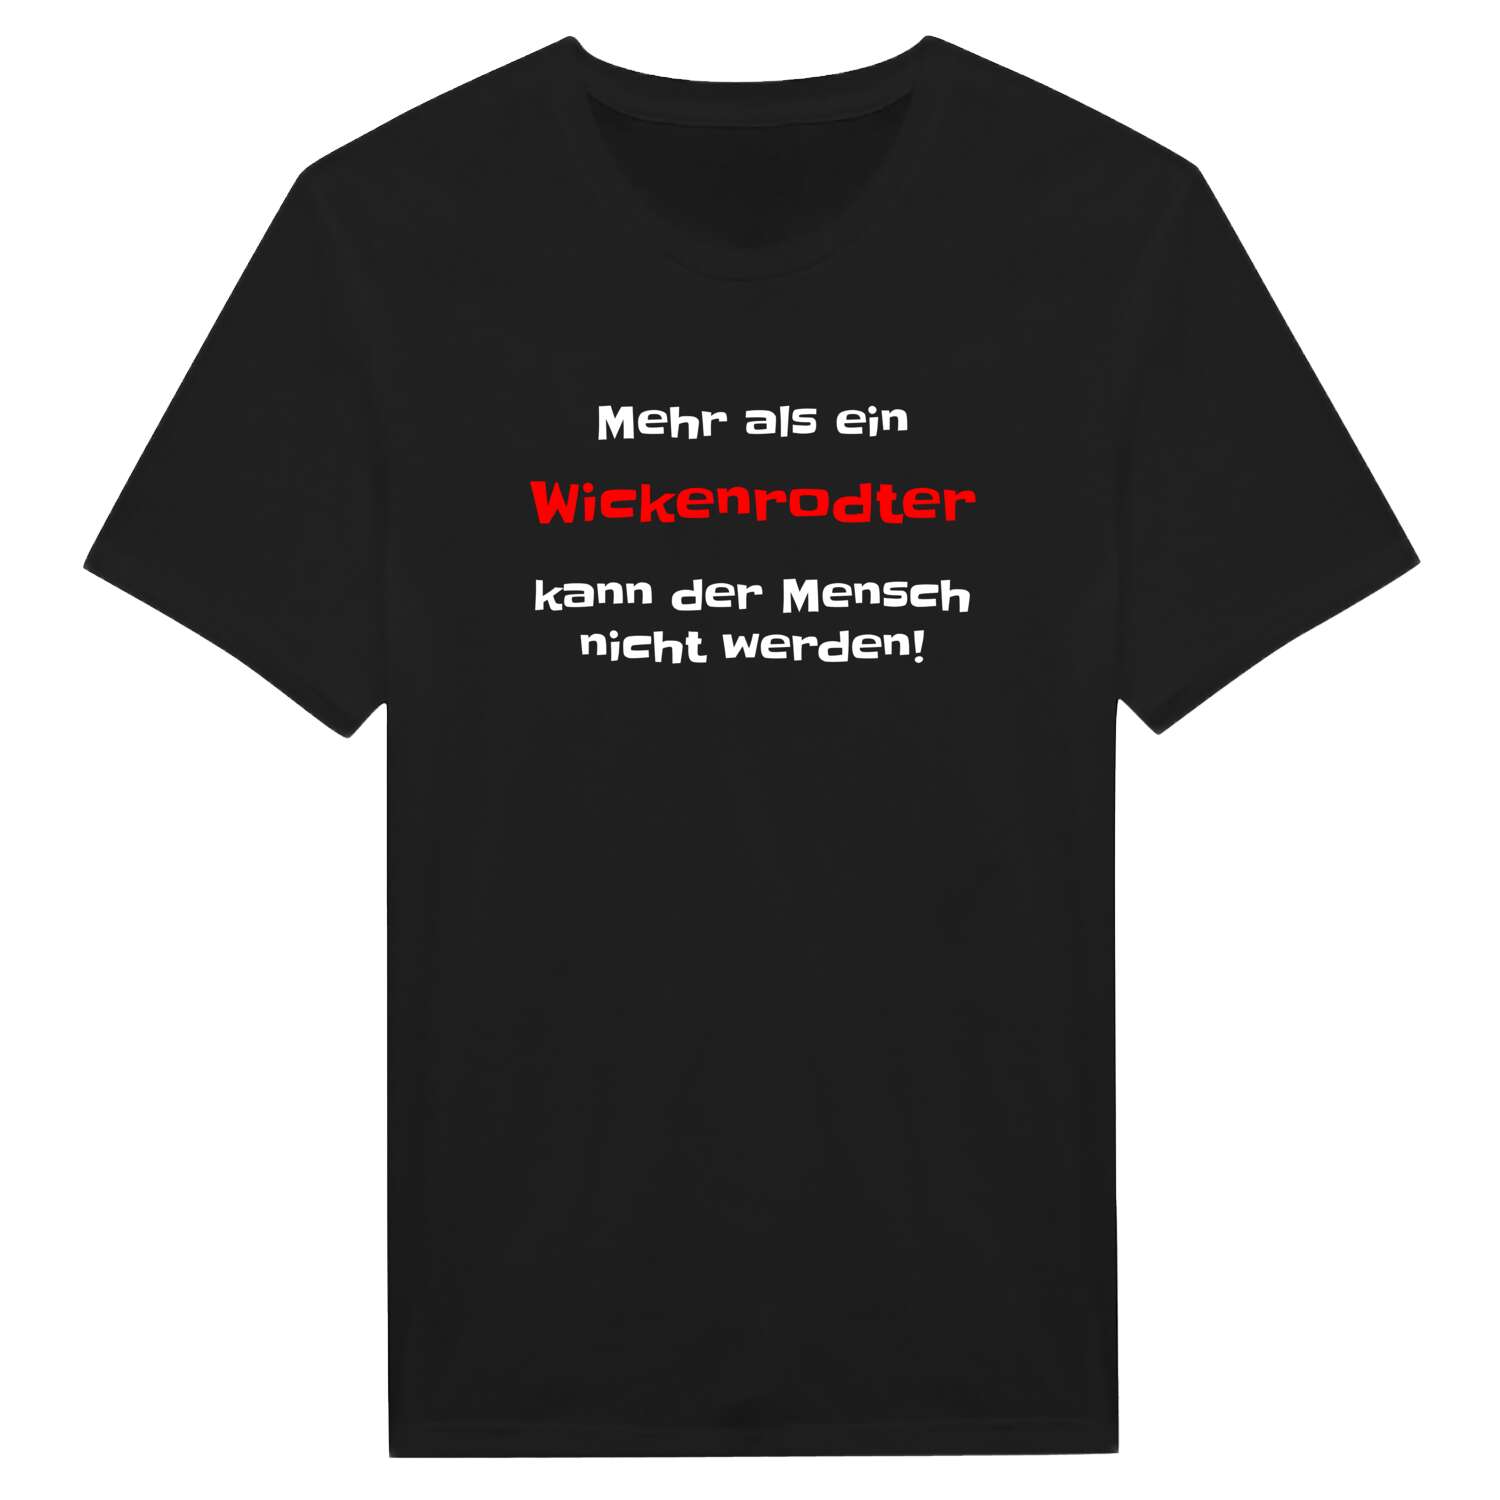 Wickenrodt T-Shirt »Mehr als ein«